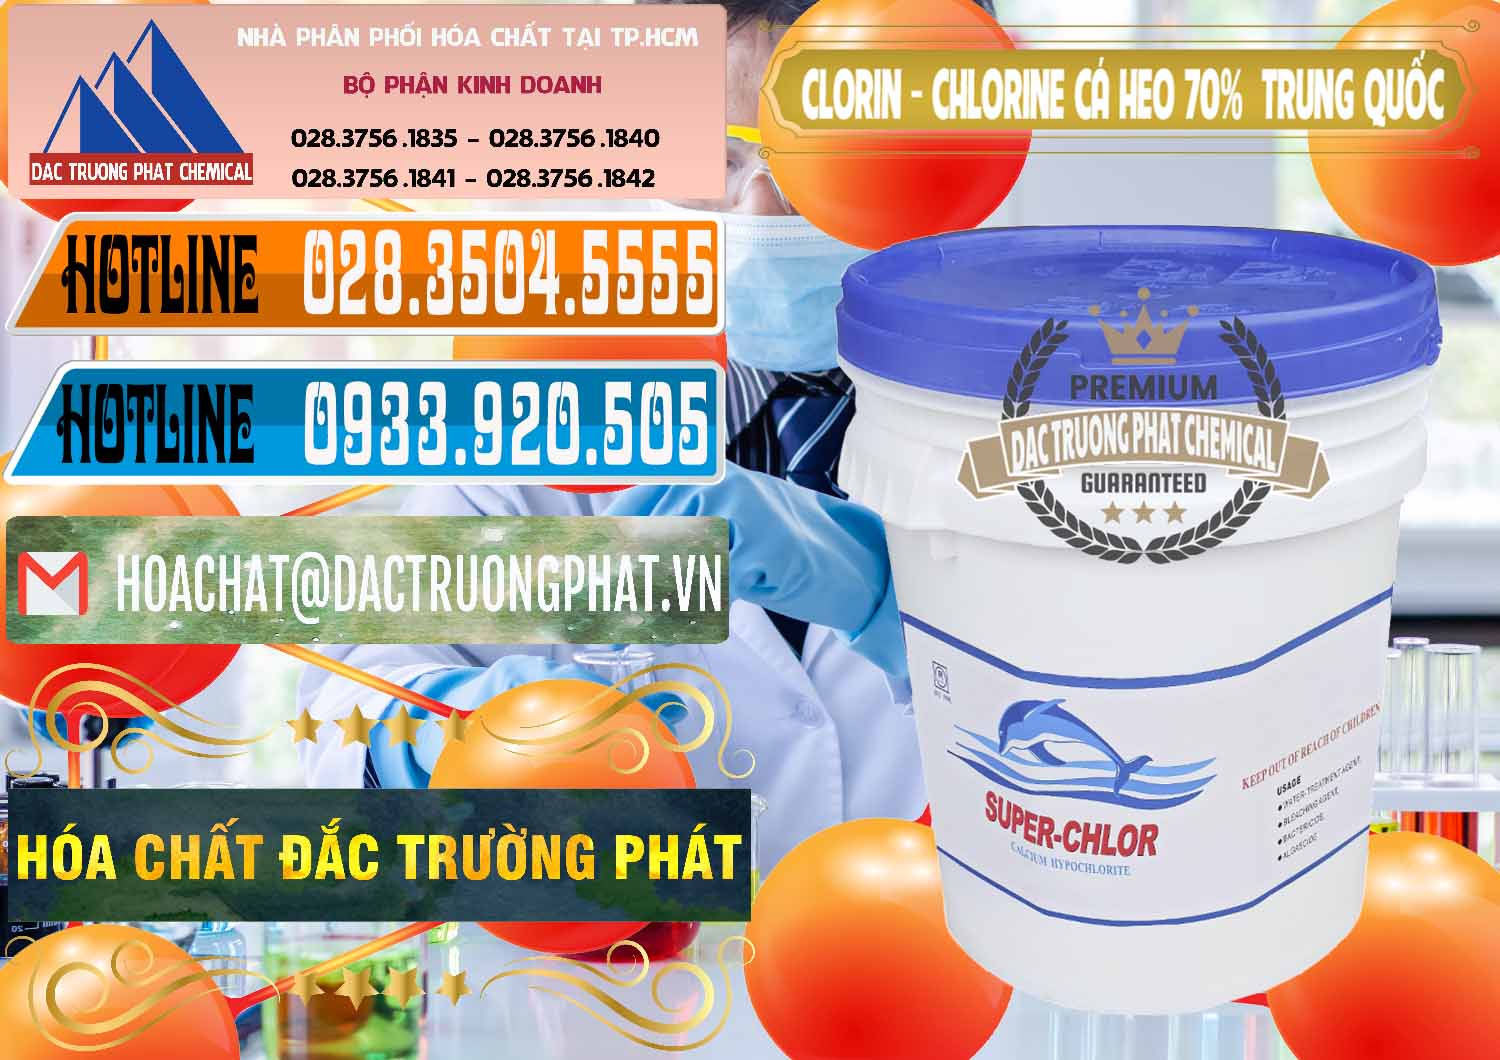 Nơi chuyên bán - phân phối Clorin - Chlorine Cá Heo 70% Super Chlor Nắp Xanh Trung Quốc China - 0209 - Cung cấp ( phân phối ) hóa chất tại TP.HCM - stmp.net